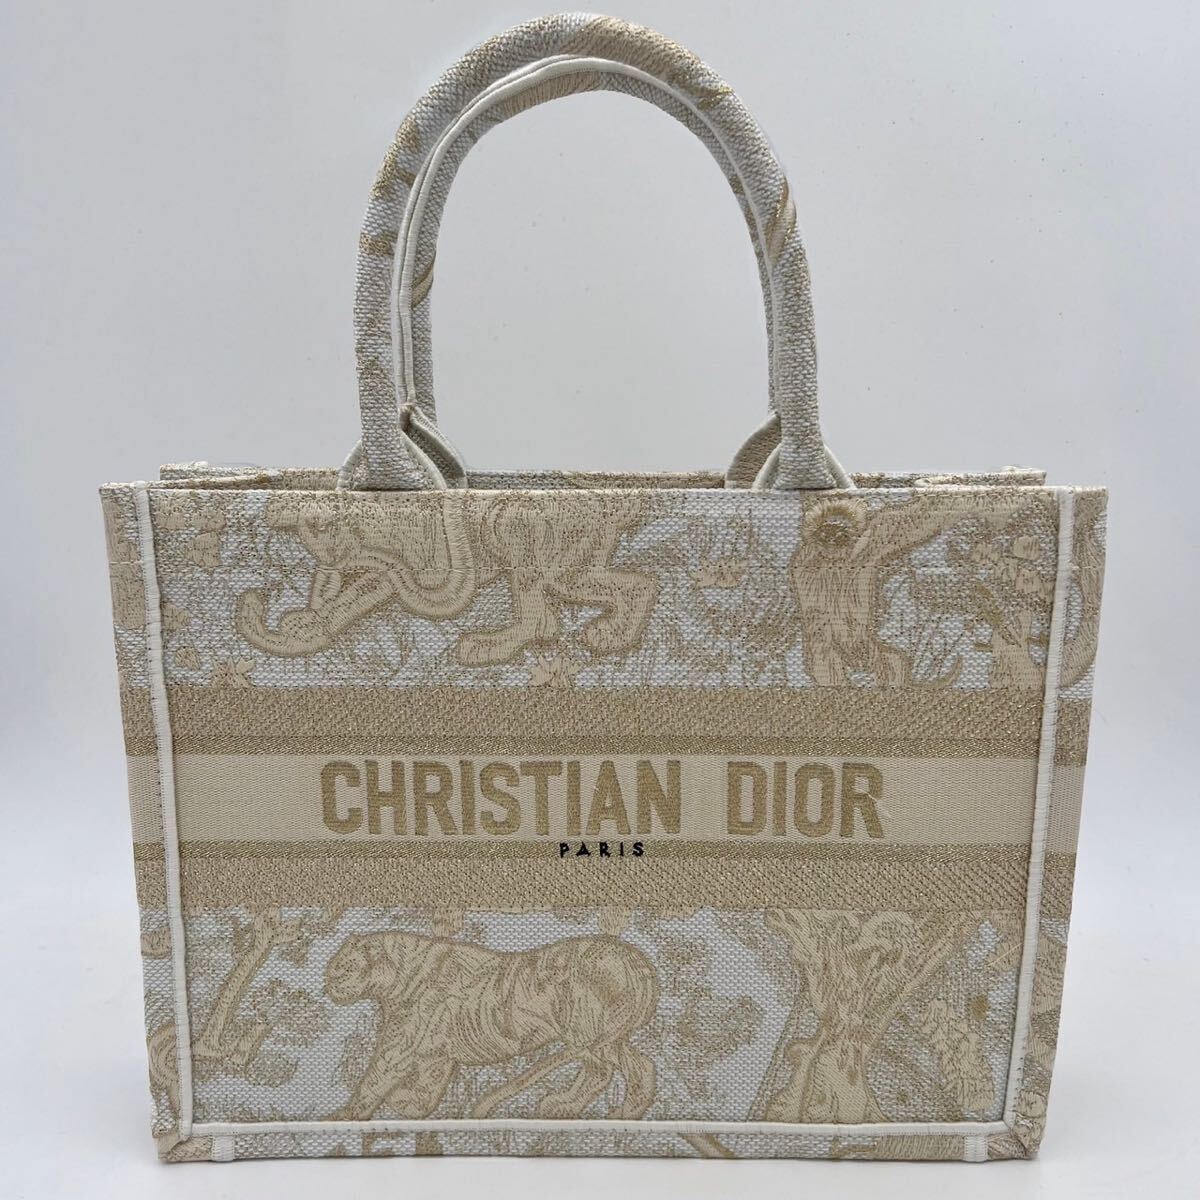 ◆付属品/極美品◆ ディオール ブックトート ミディアム レディース Christian Dior Book Tote オブリーク ロゴ ゴールド 刺繍バッグ_画像2